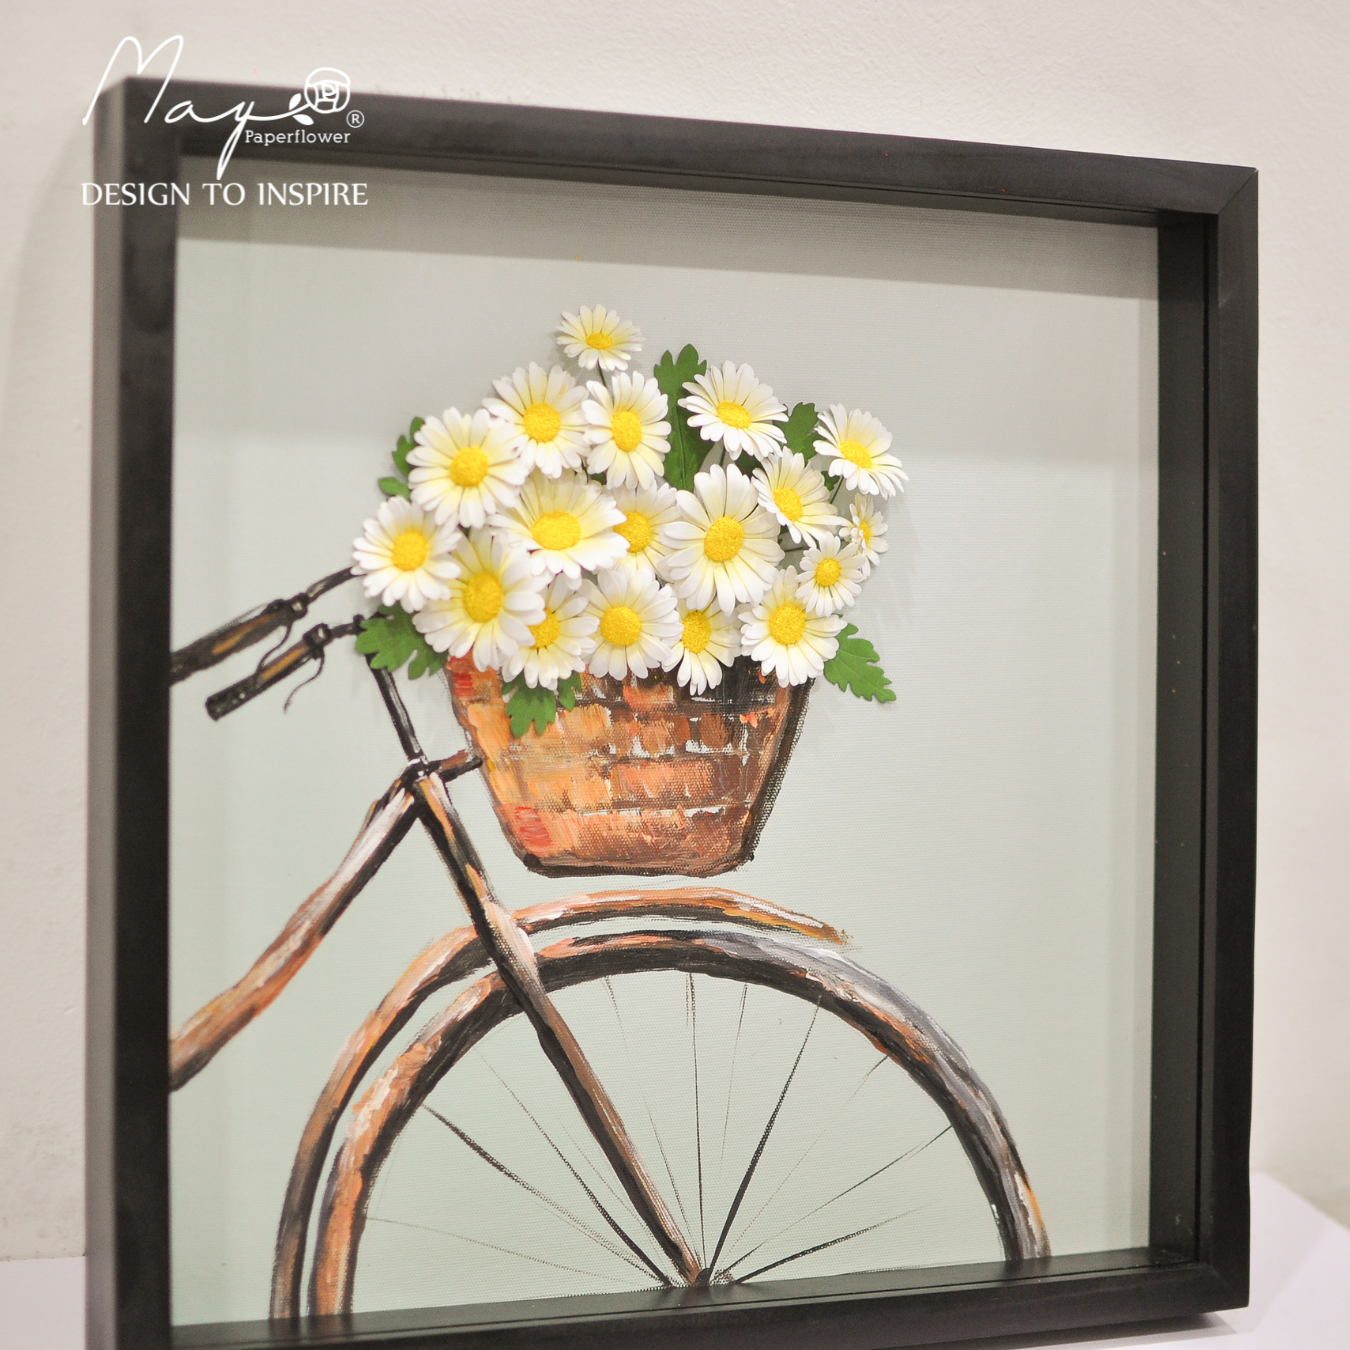 Tranh hoa giấy handmde trang trí cao cấp ROMANCE BICYCLE FLOWERS 40x40cm - Maypaperflower Hoa giấy nghệ thuật